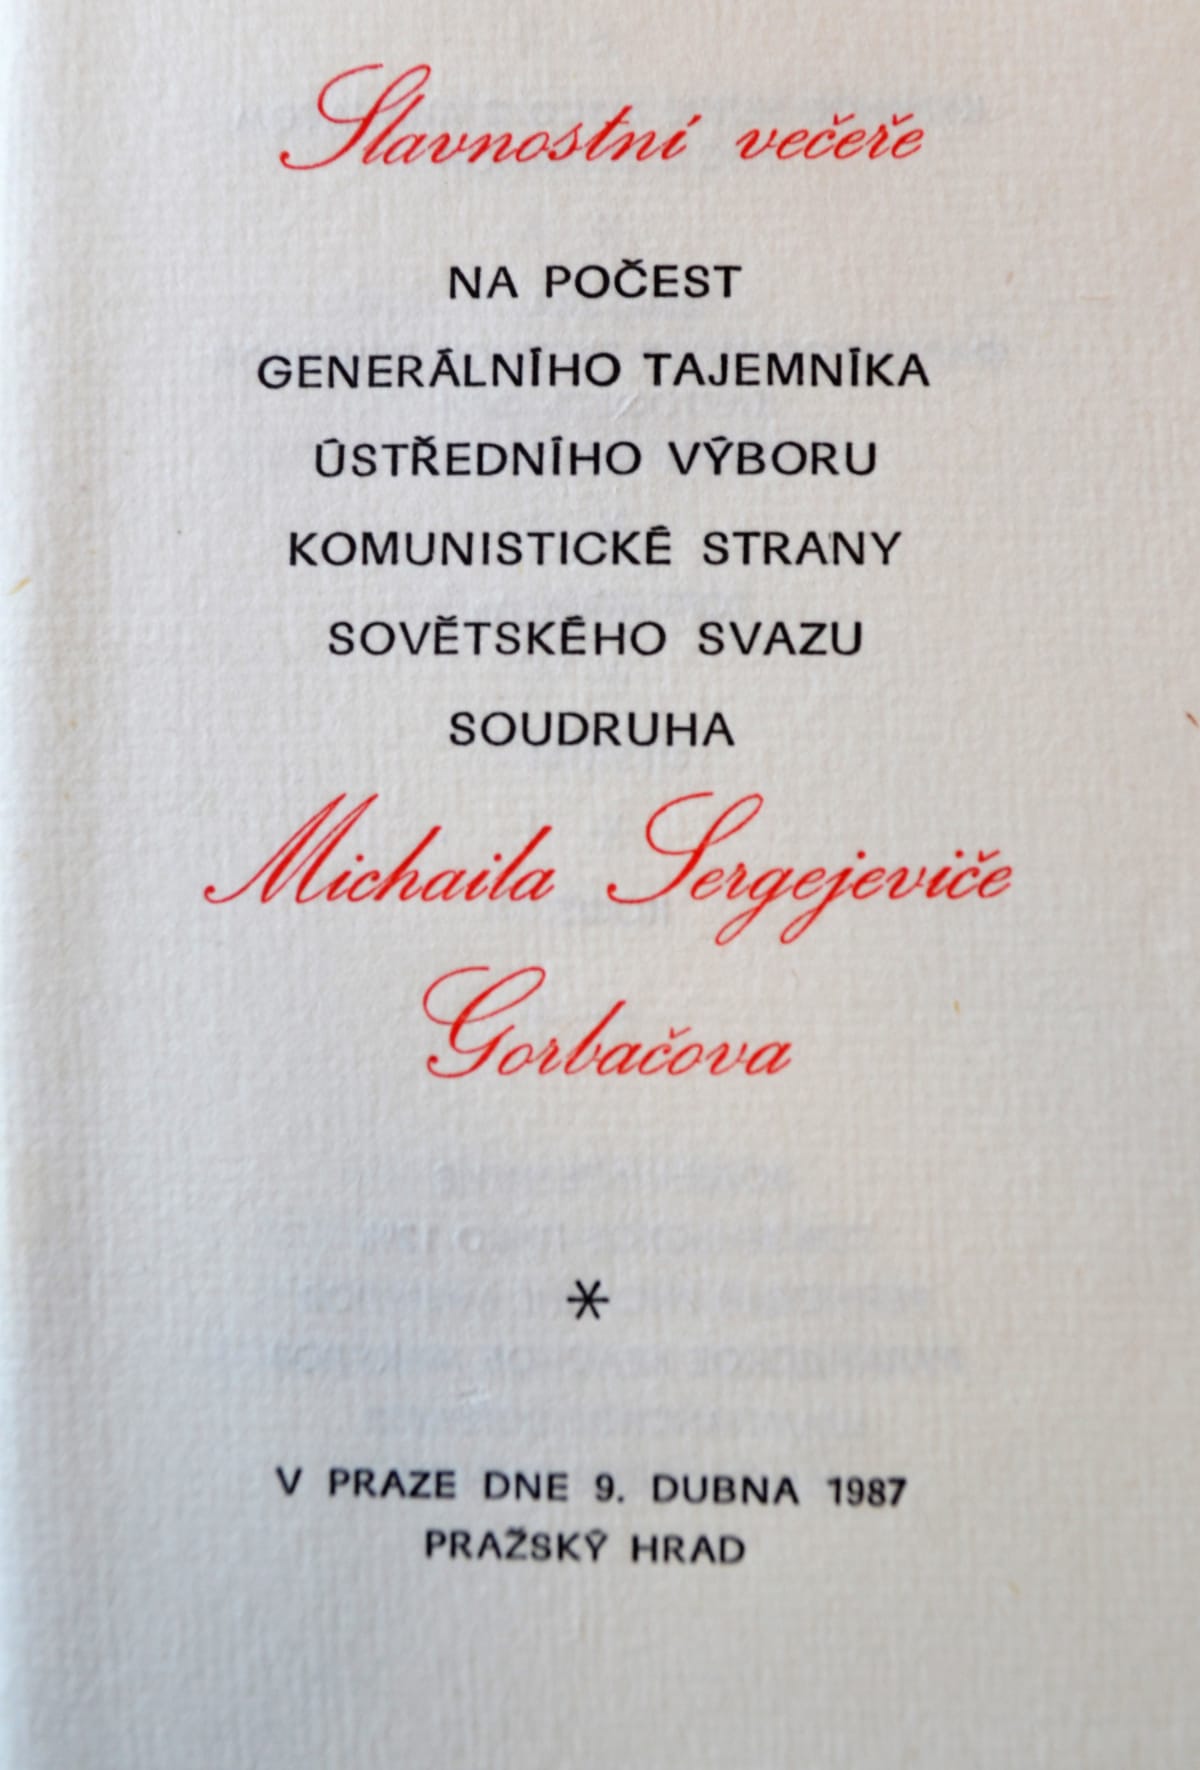 Hradní menu pro sovětského vůdce Michaila S. Gorbačova v roce 1987. (Zdroj Archiv KPR, reprofoto Ivan Motýl)